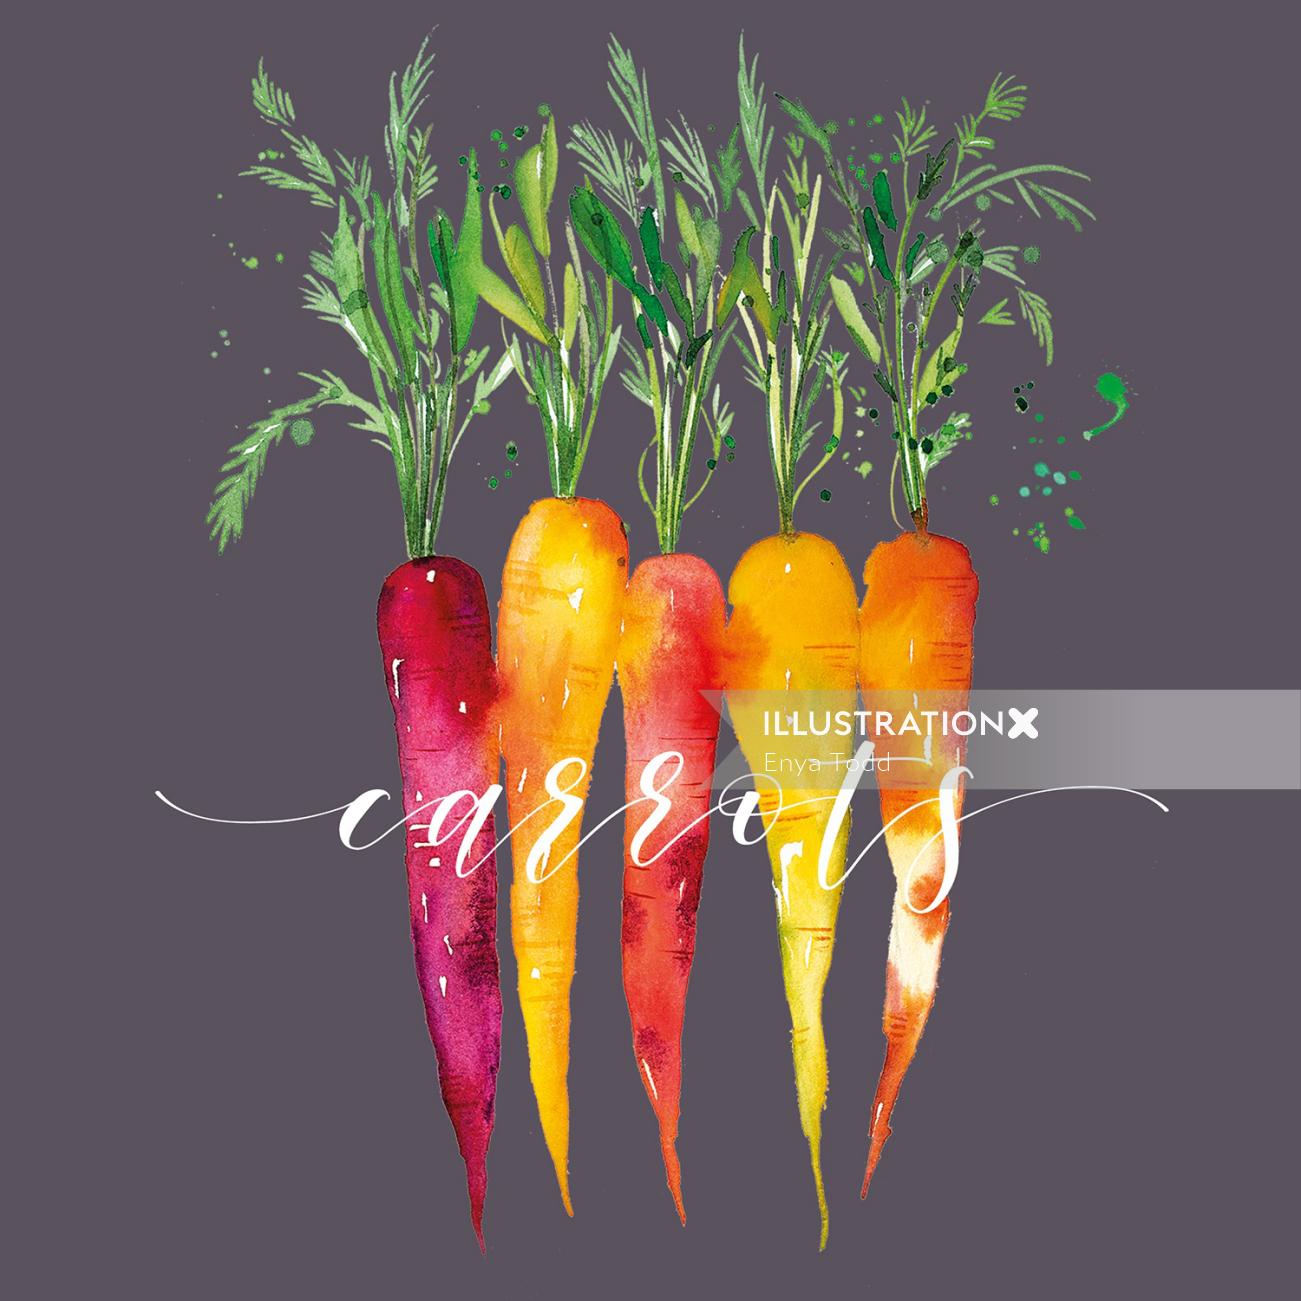 Carrots artwork